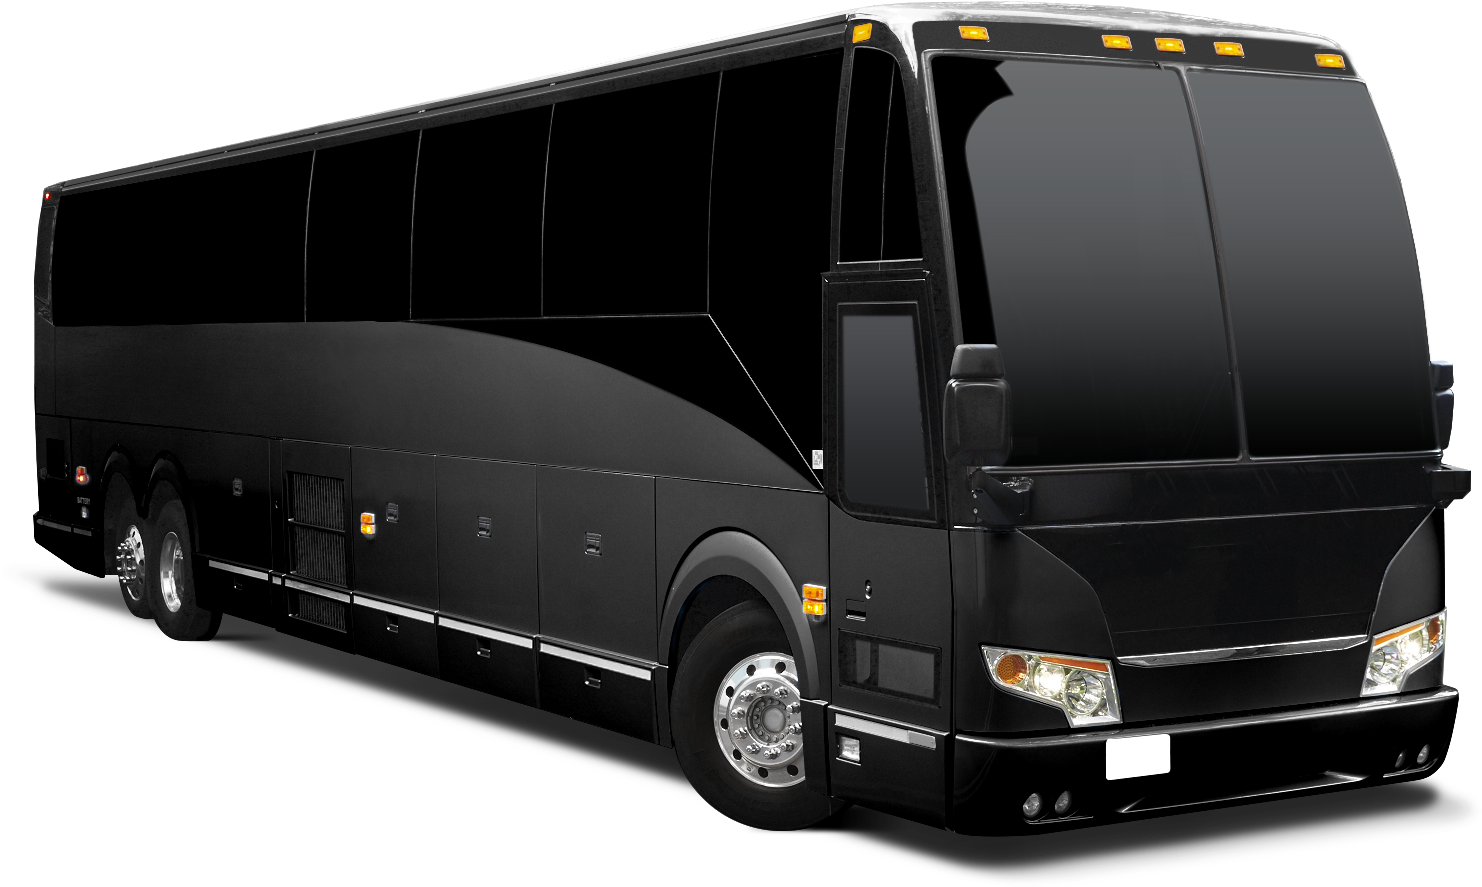 A black coach bus